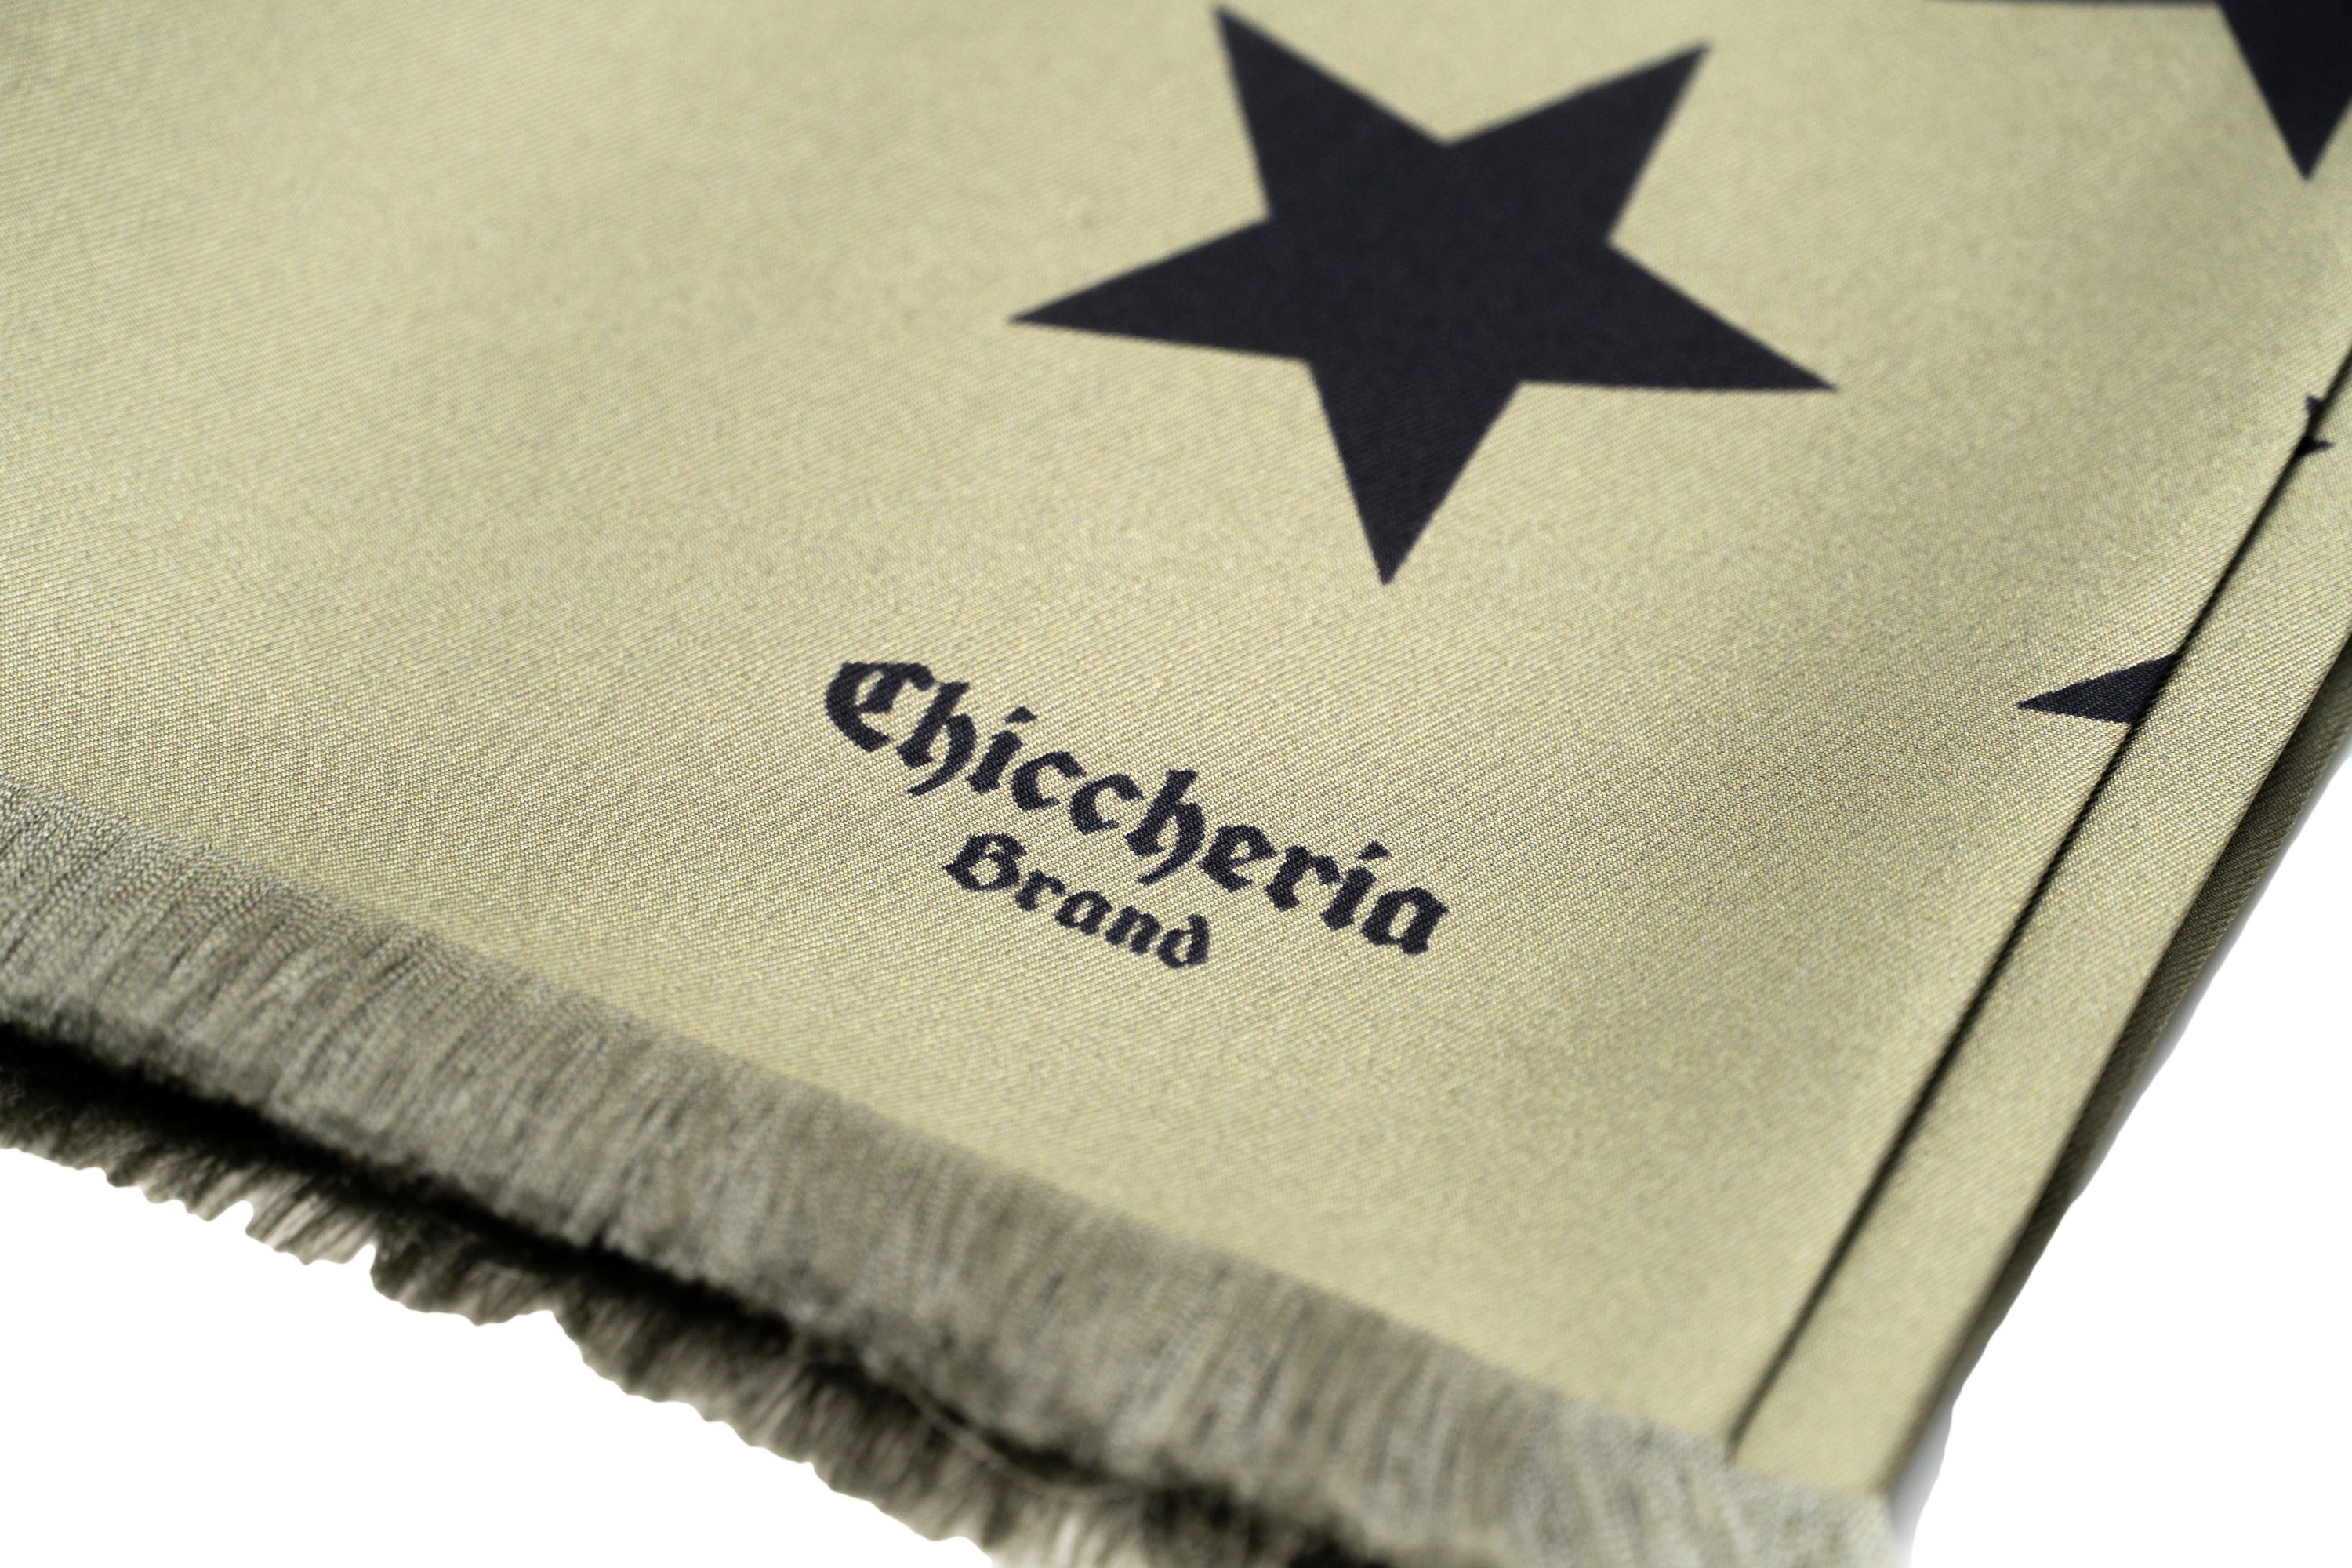 Chiccheria Brand STARS, in Seidenschal Made Oliv-Schwarz Italy